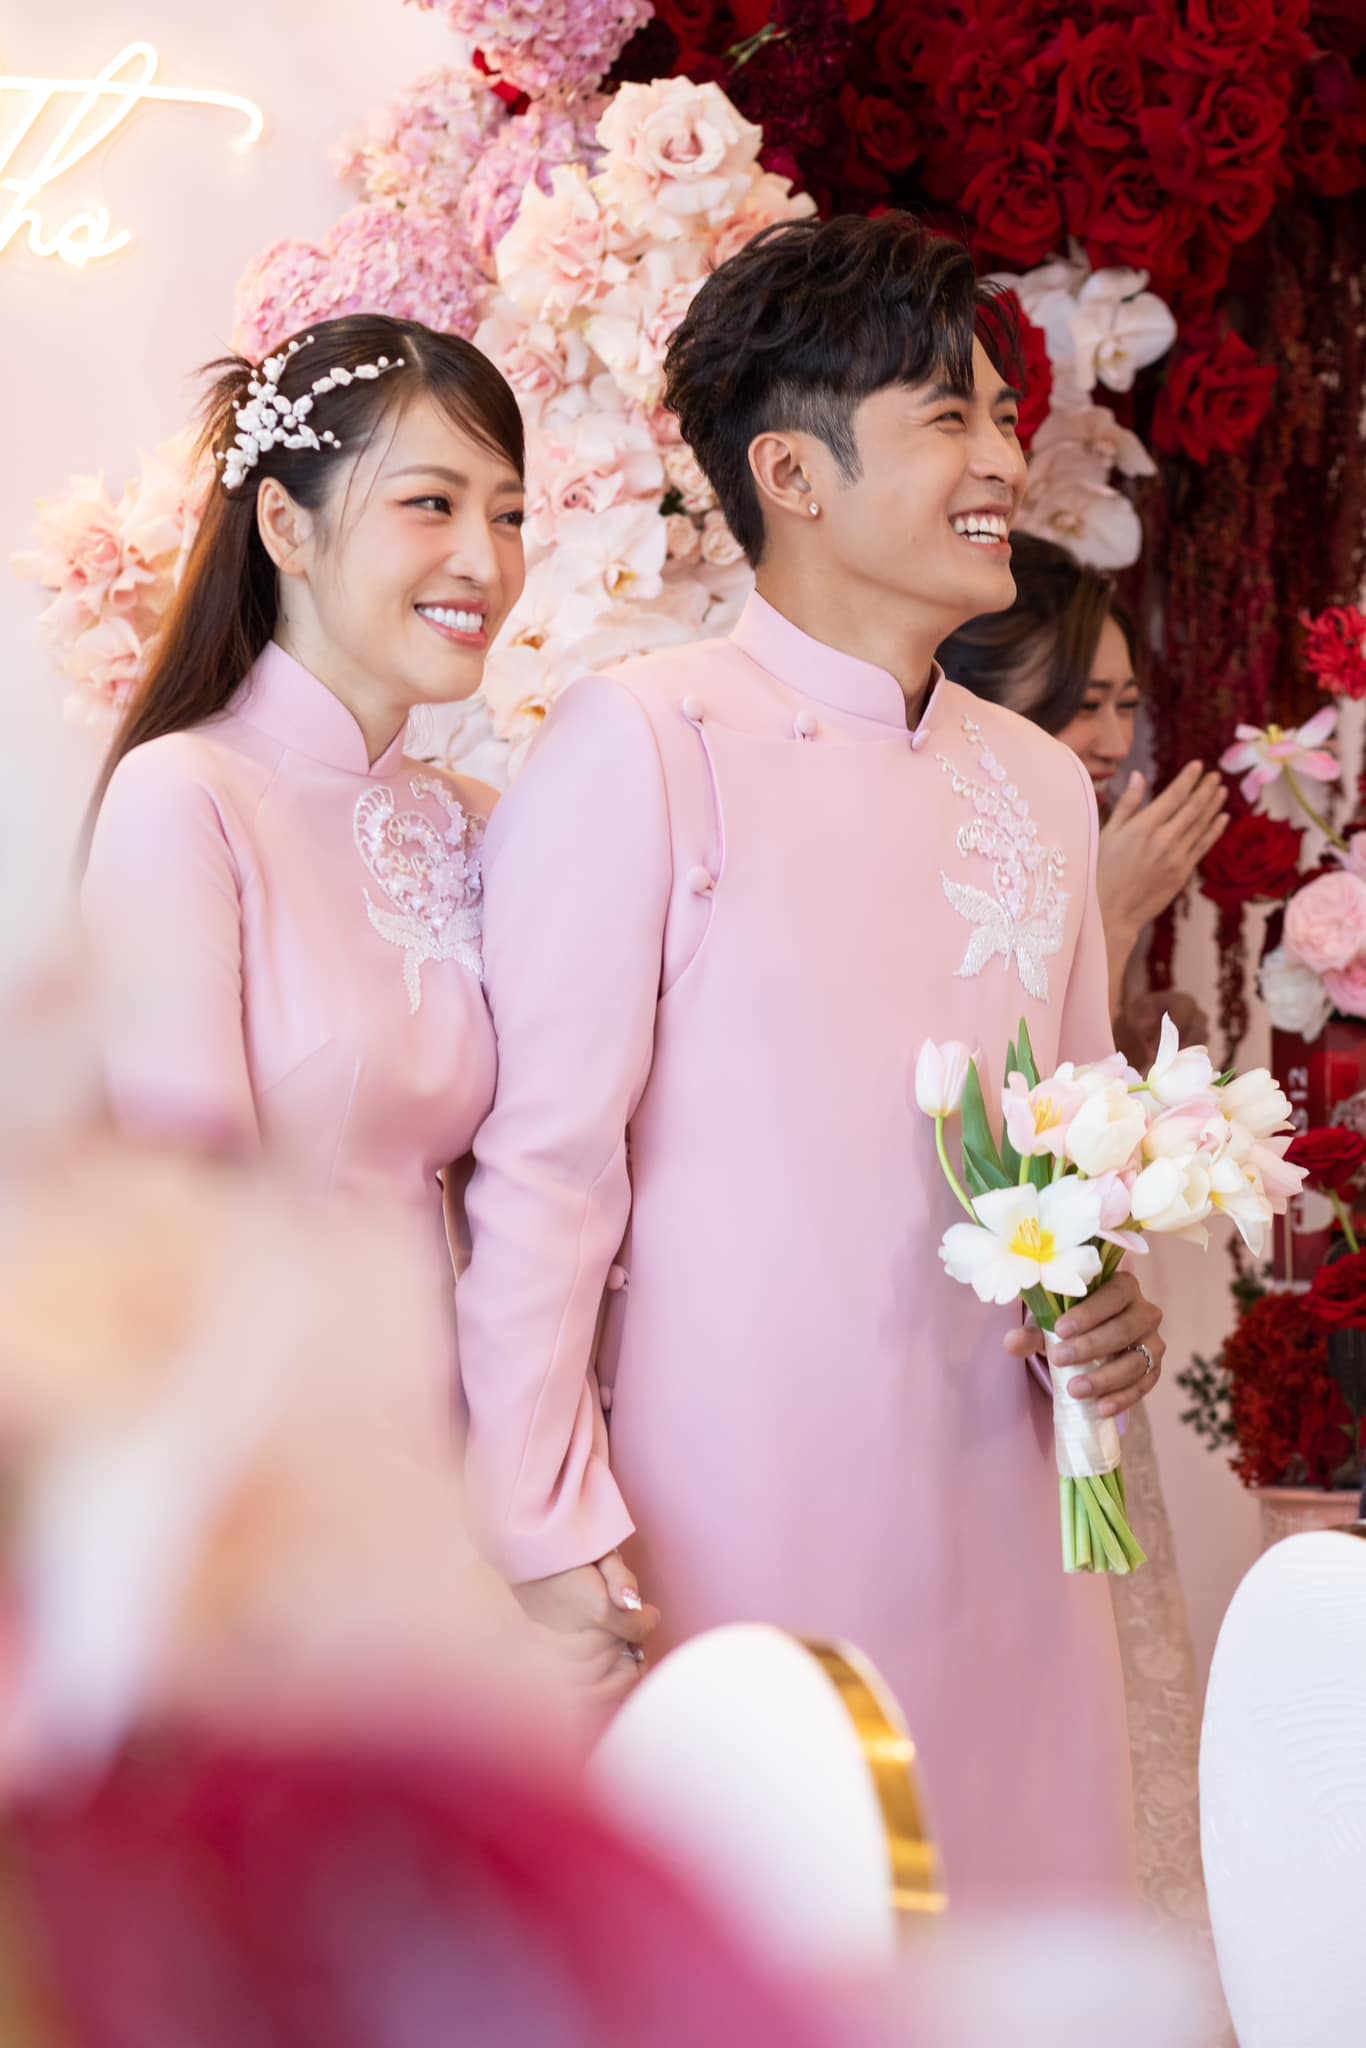 Đám cưới Puka và Gin Tuấn Kiệt khiến cả showbiz rần rần như Tết, Minh Tú hé lộ tin nhắn nhóm kín - ảnh 5